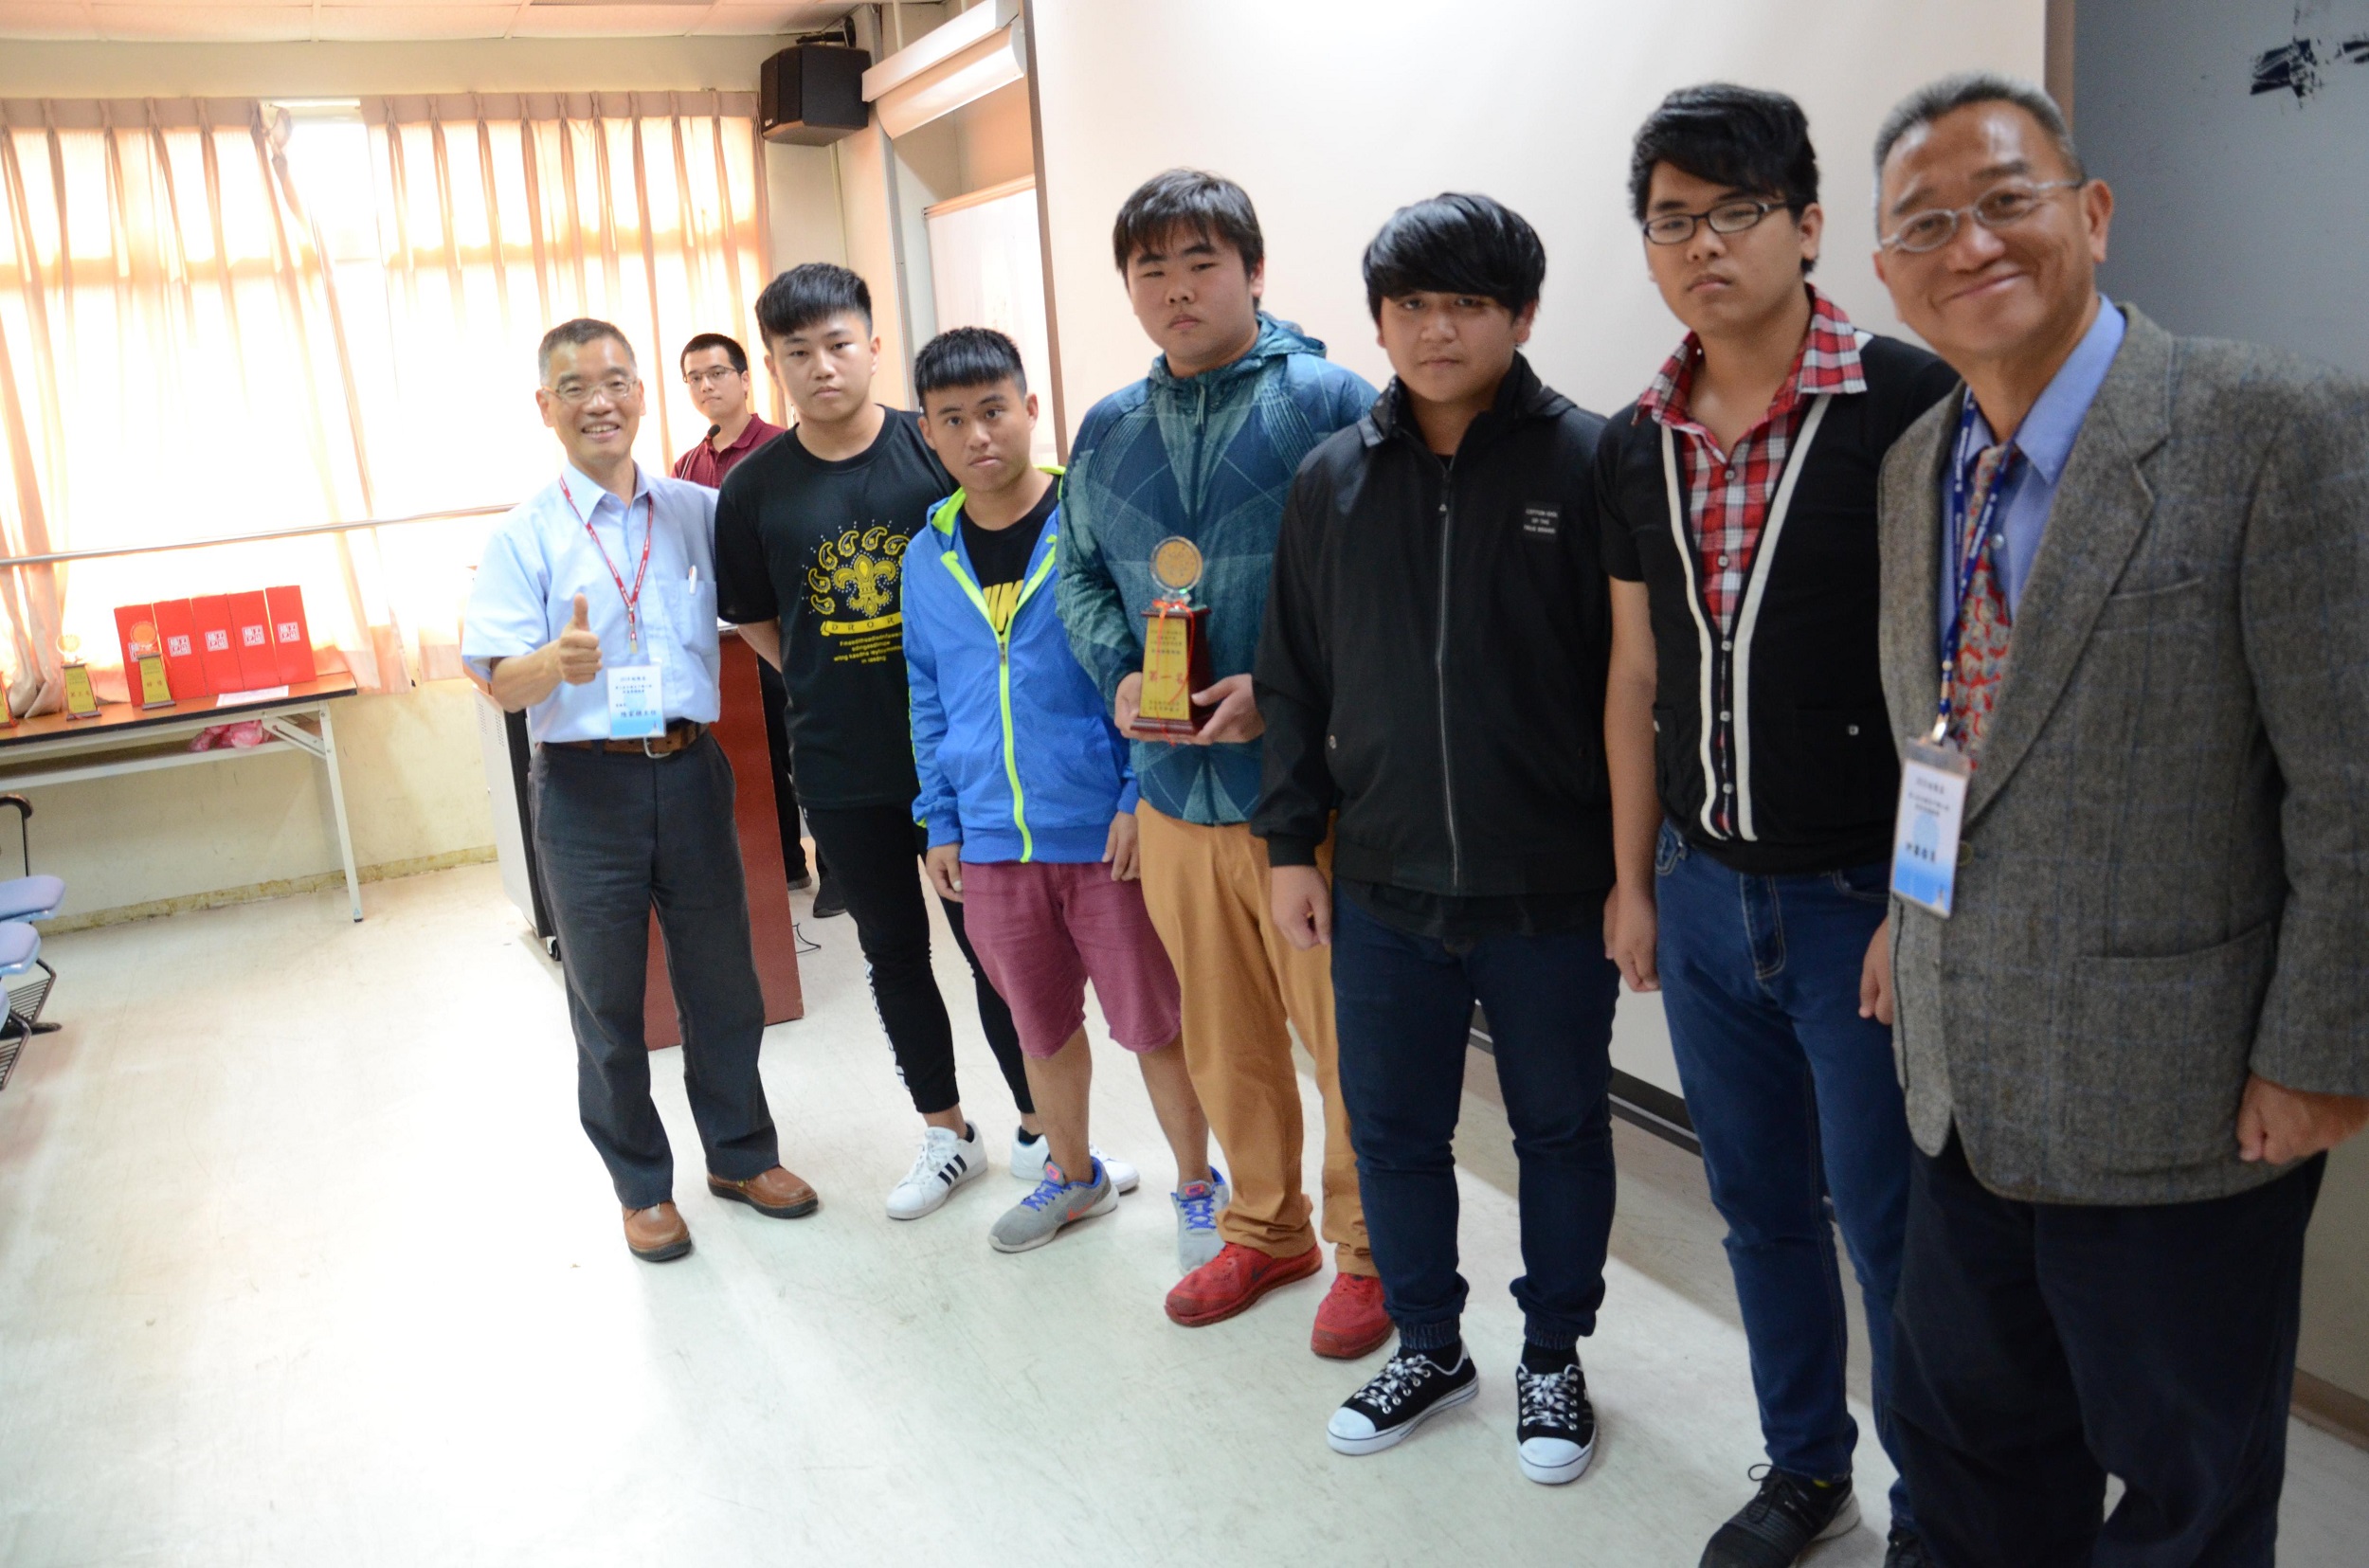 第3屆裕隆盃全國高中職工程創意專題競賽「電機與控制組」由培德工家獲得第一名